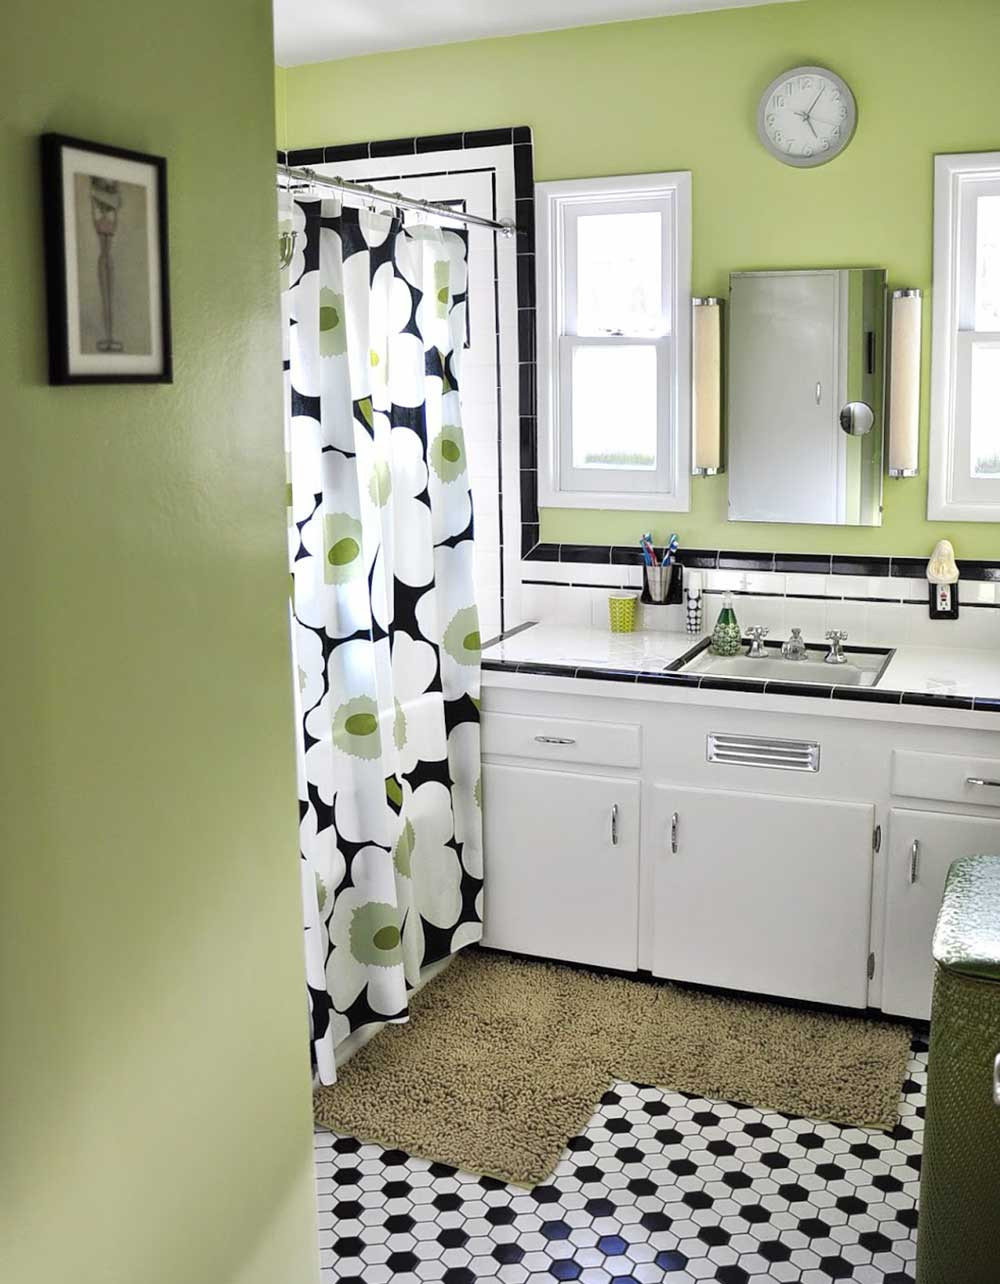 Black And White Tile Bathroom
 Dawn creates a classic black and white tile bathroom